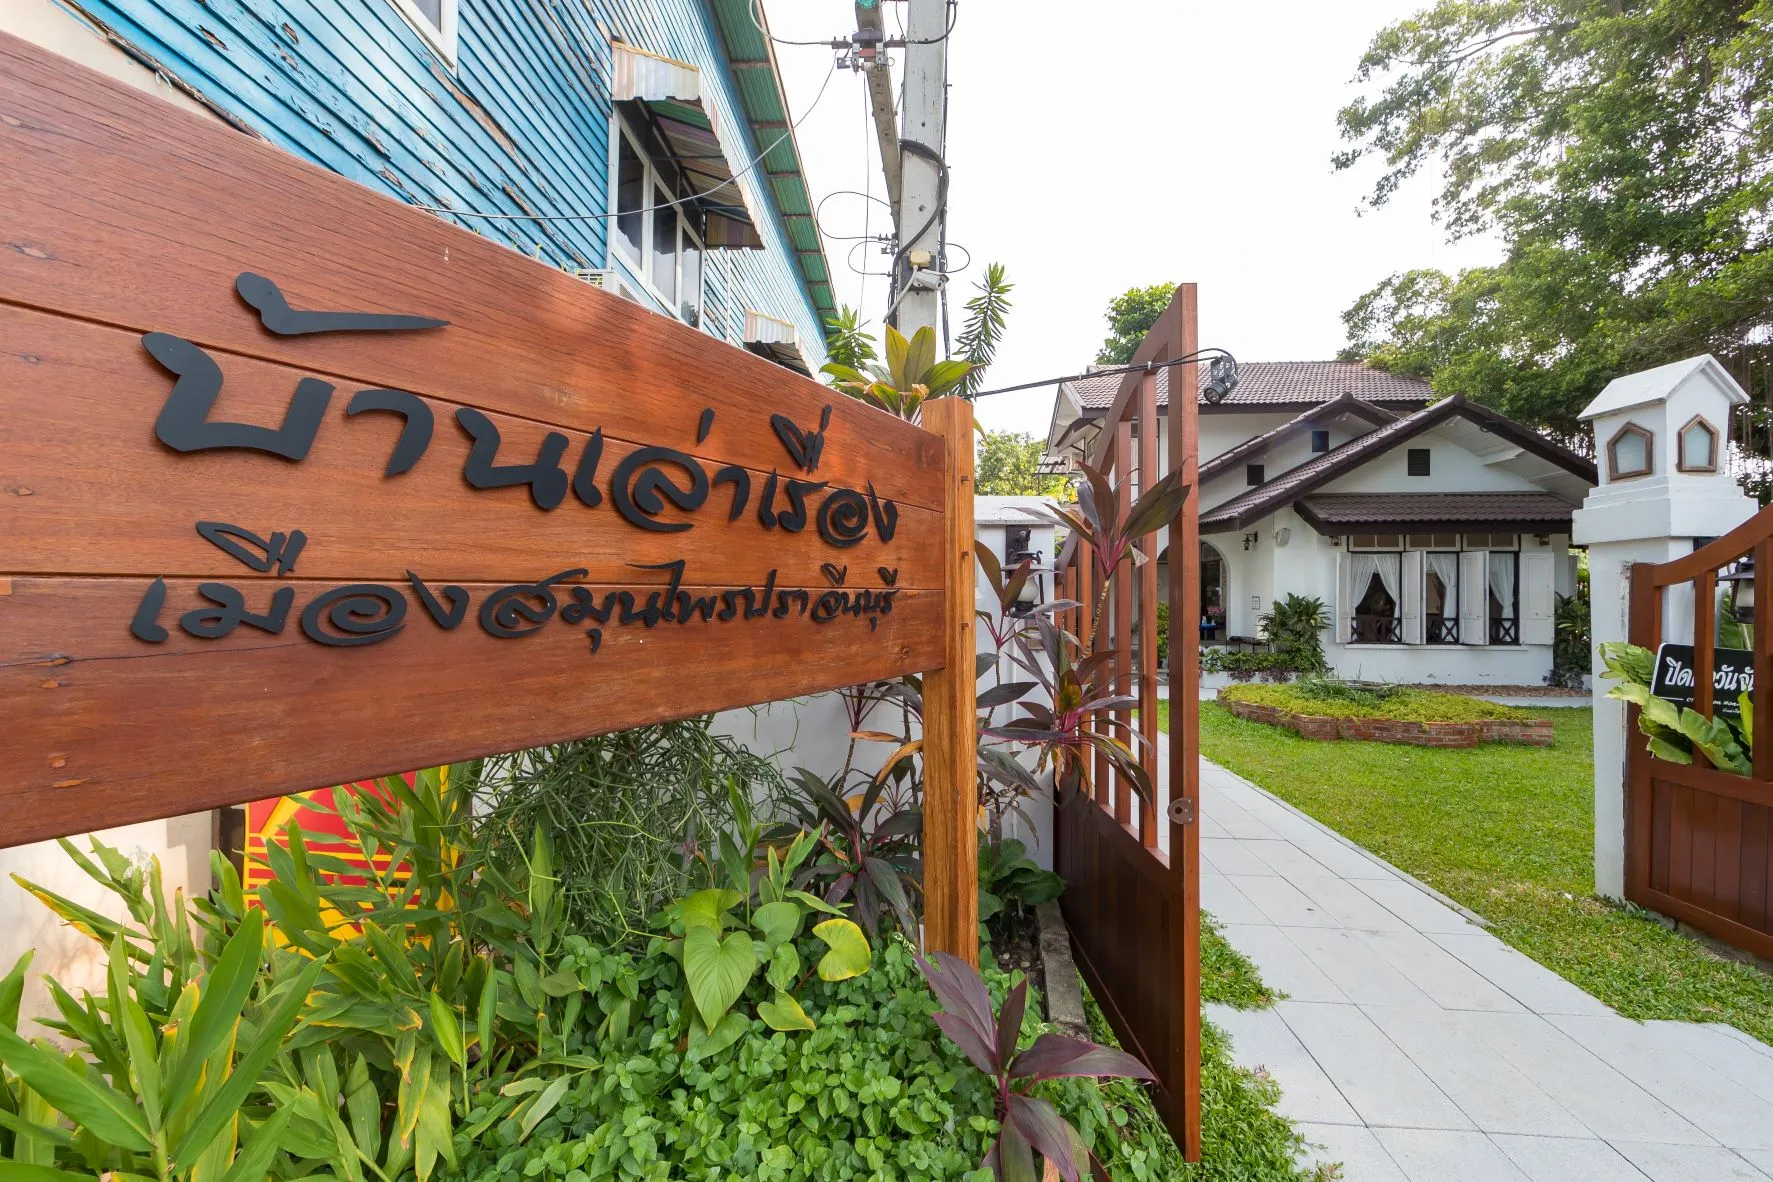 อำเภอศรีมหาโพธิ : บ้านเล่าเรื่อง เมืองสมุนไพรปราจีนบุรี (Source: การท่องเที่ยวแห่งประเทศไทย)